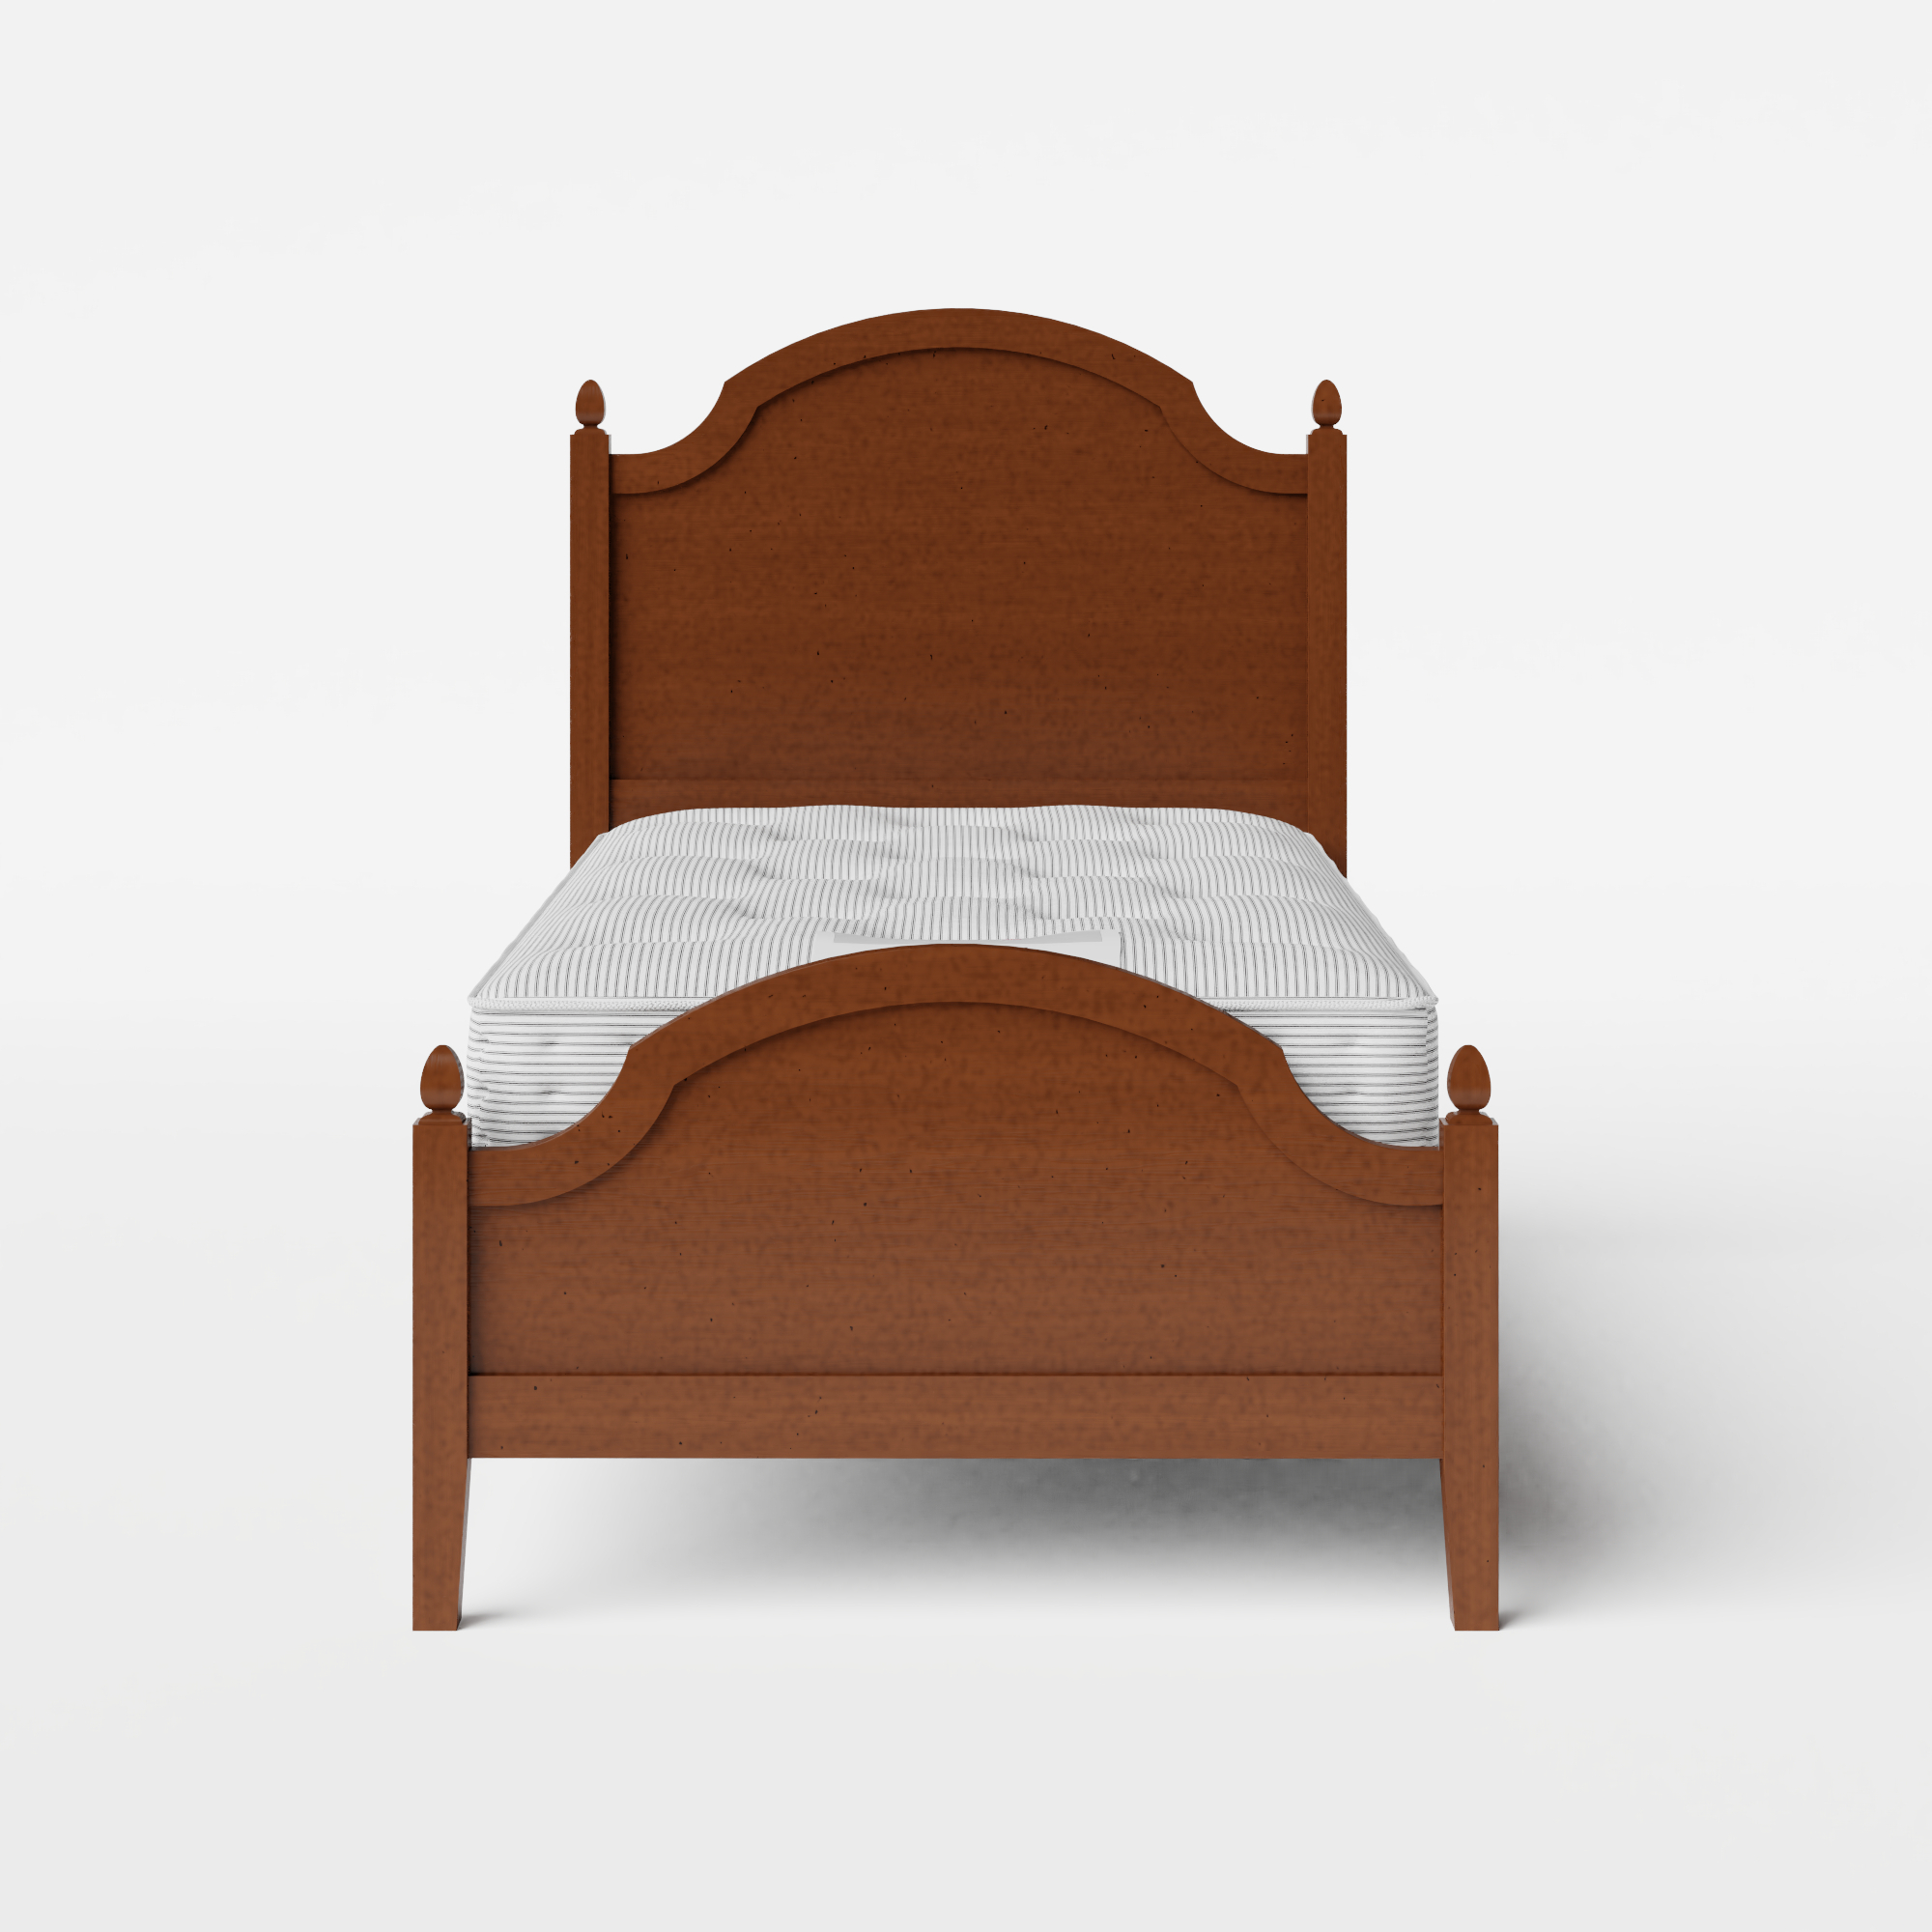 Kipling Low Footend cama individual de madera pintada en dark cherry con colchón